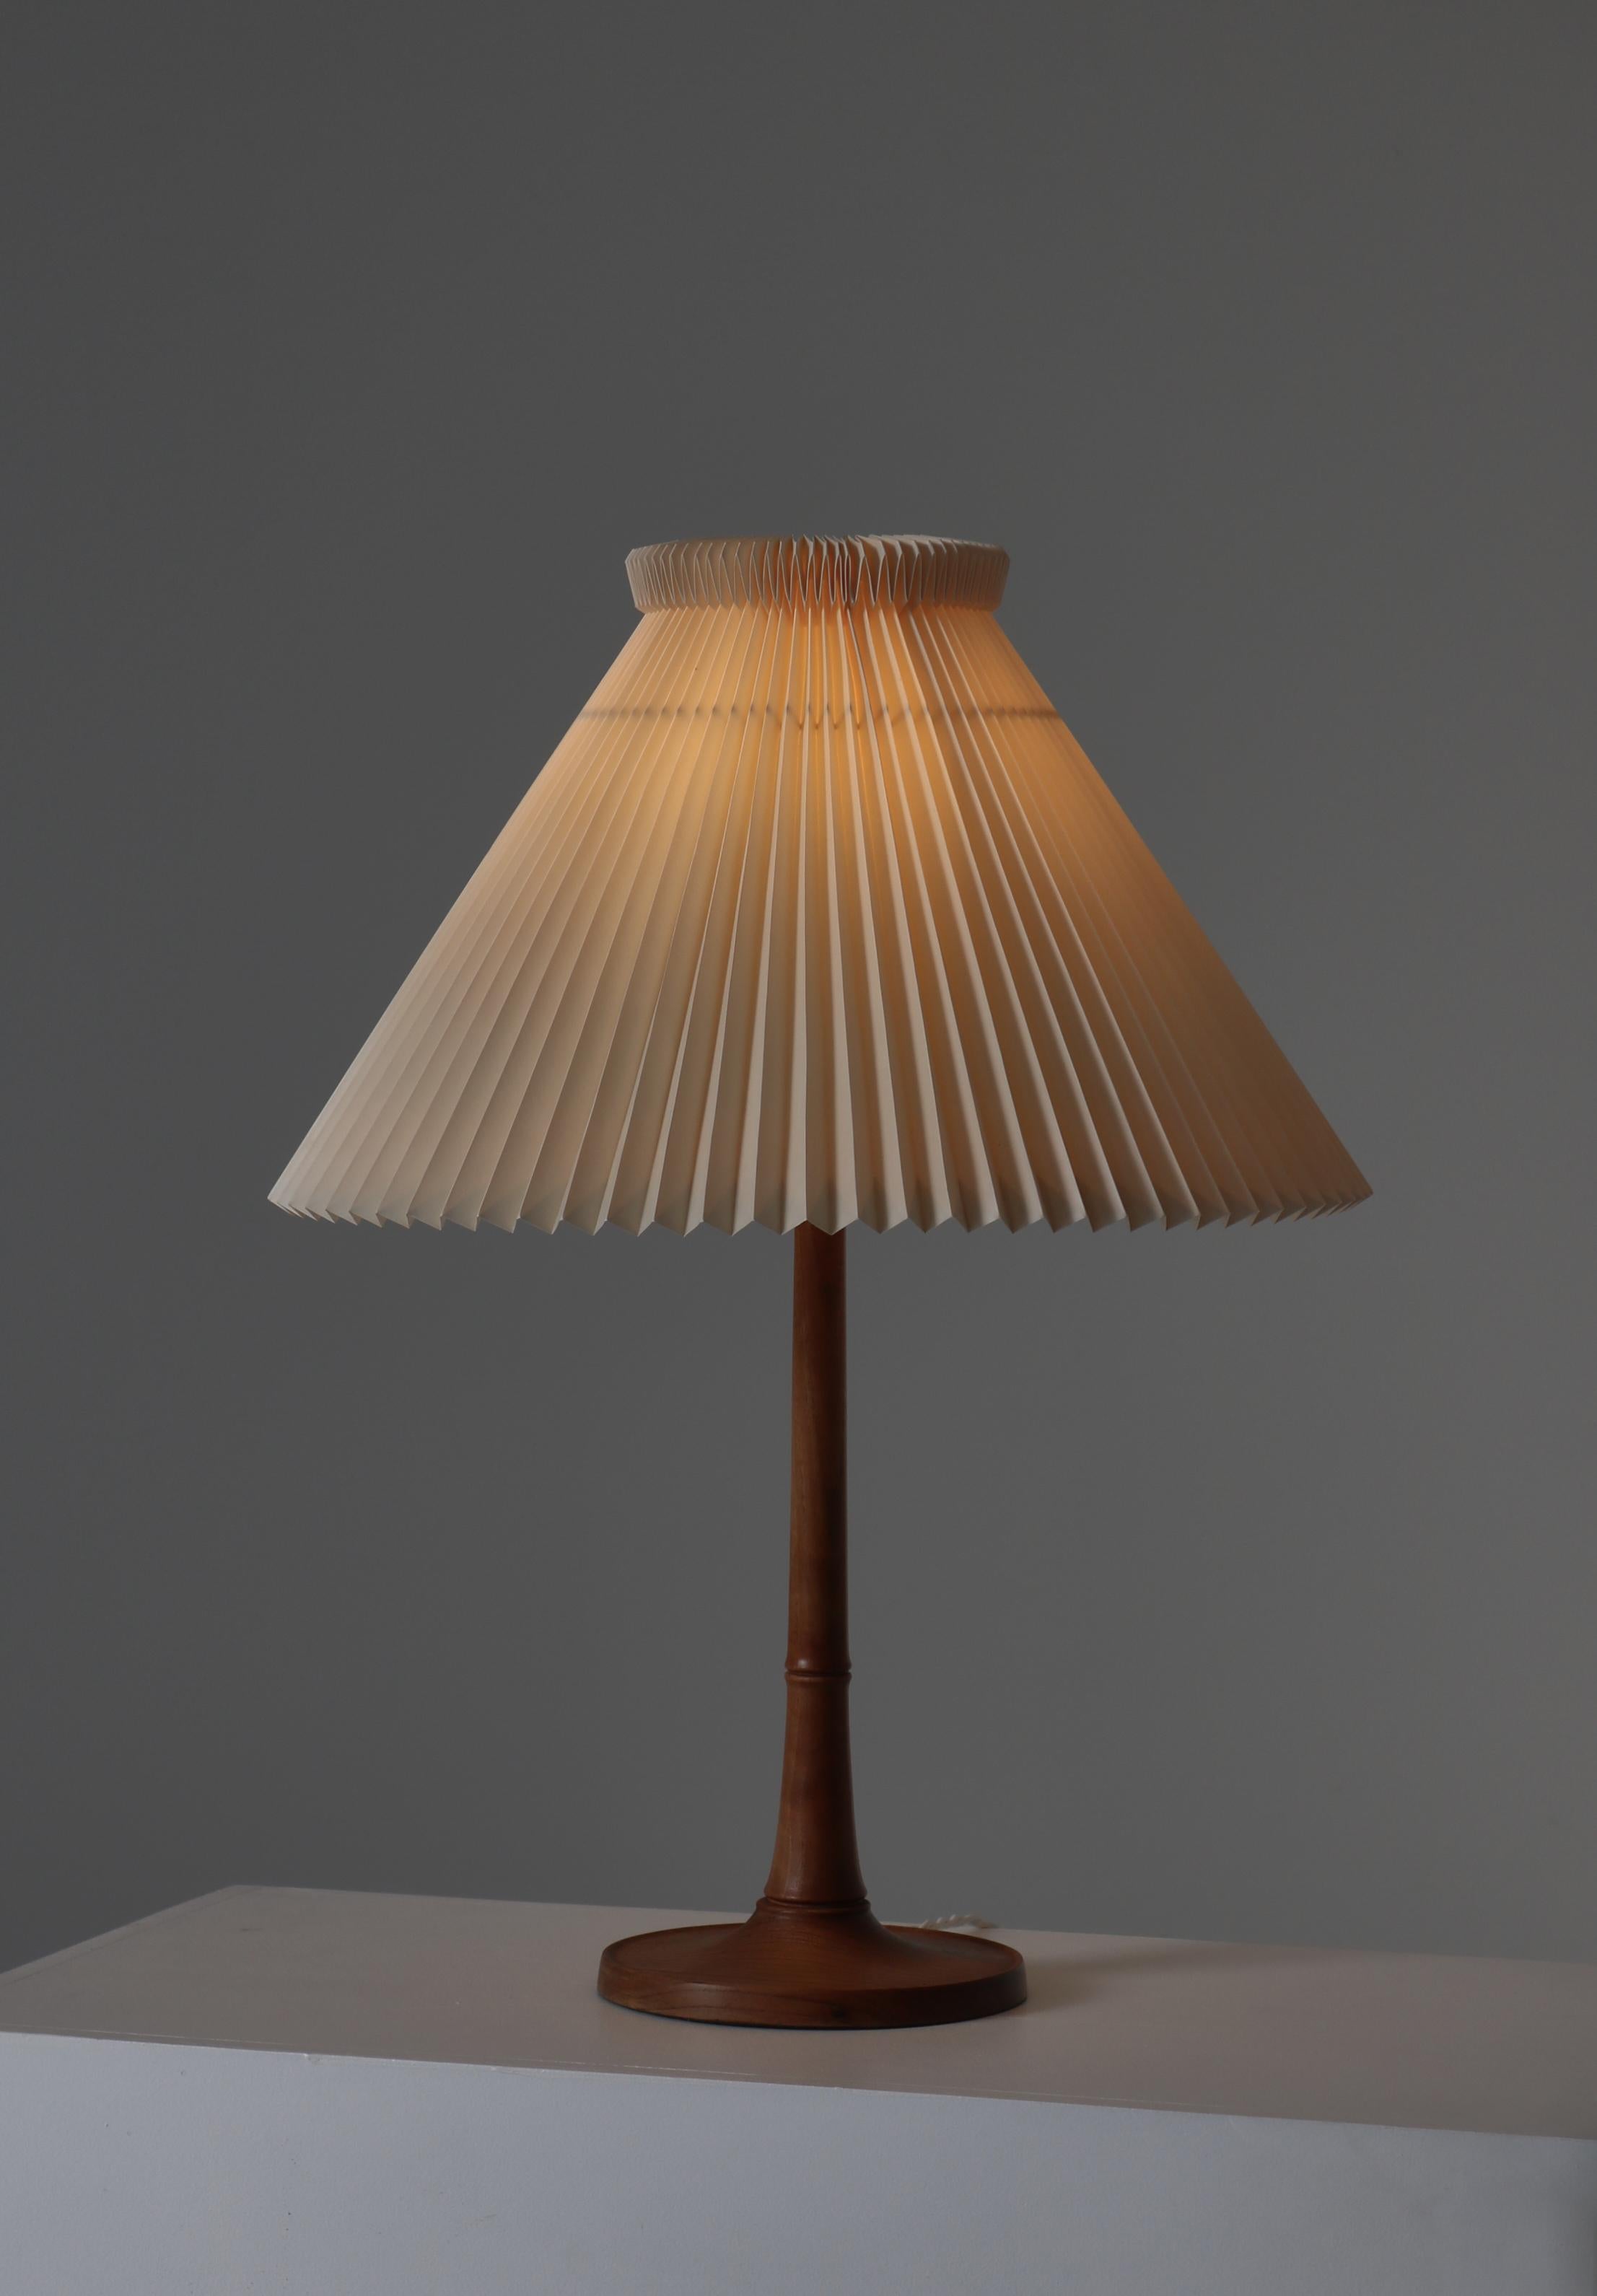 Acrylic Kaare Klint Table Lamp in Ash Wood and Hand Folded Le Klint Shade, Denmark 1940s For Sale